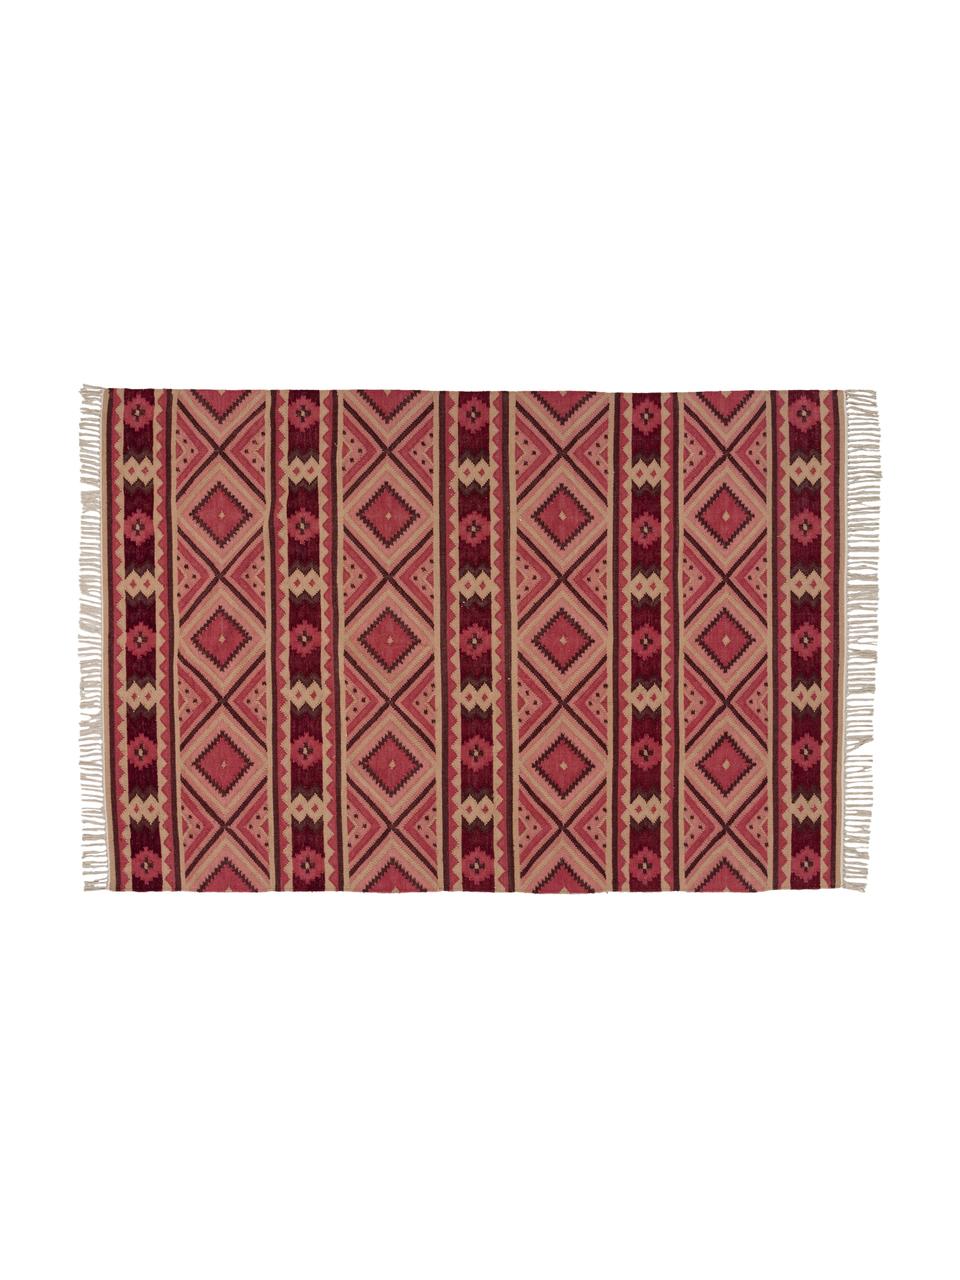 Vlnený koberec Gypsy v ružovej farbe, Bordová, krémová